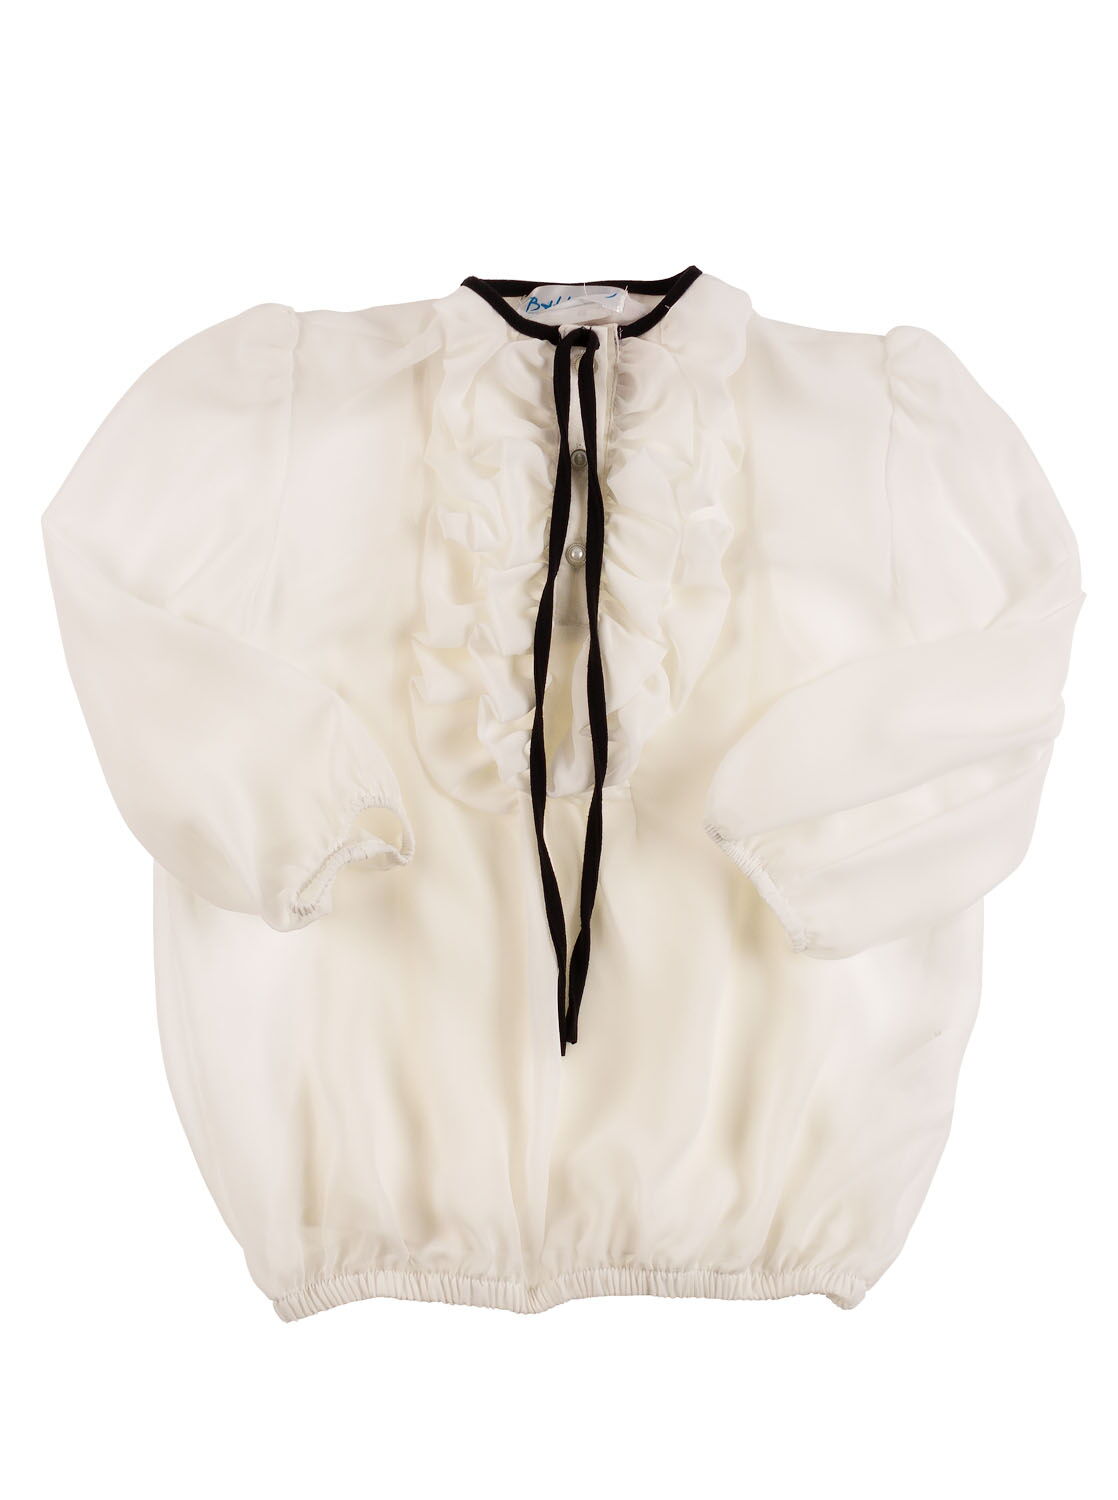 Блузка с длинным рукавом для девочки B.Fly Шелли белая - цена